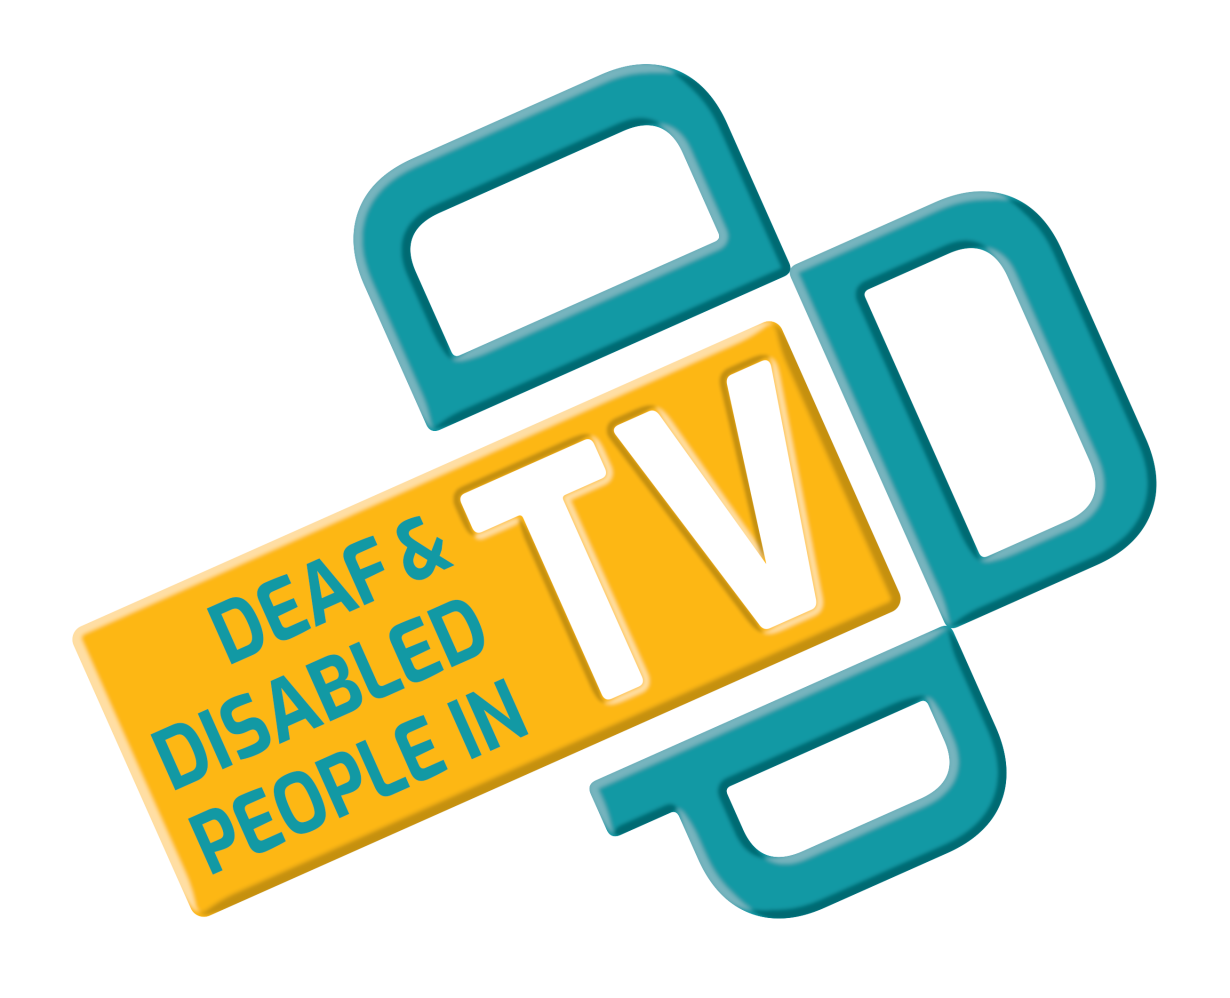 Deaf & Disabled People in TV logo